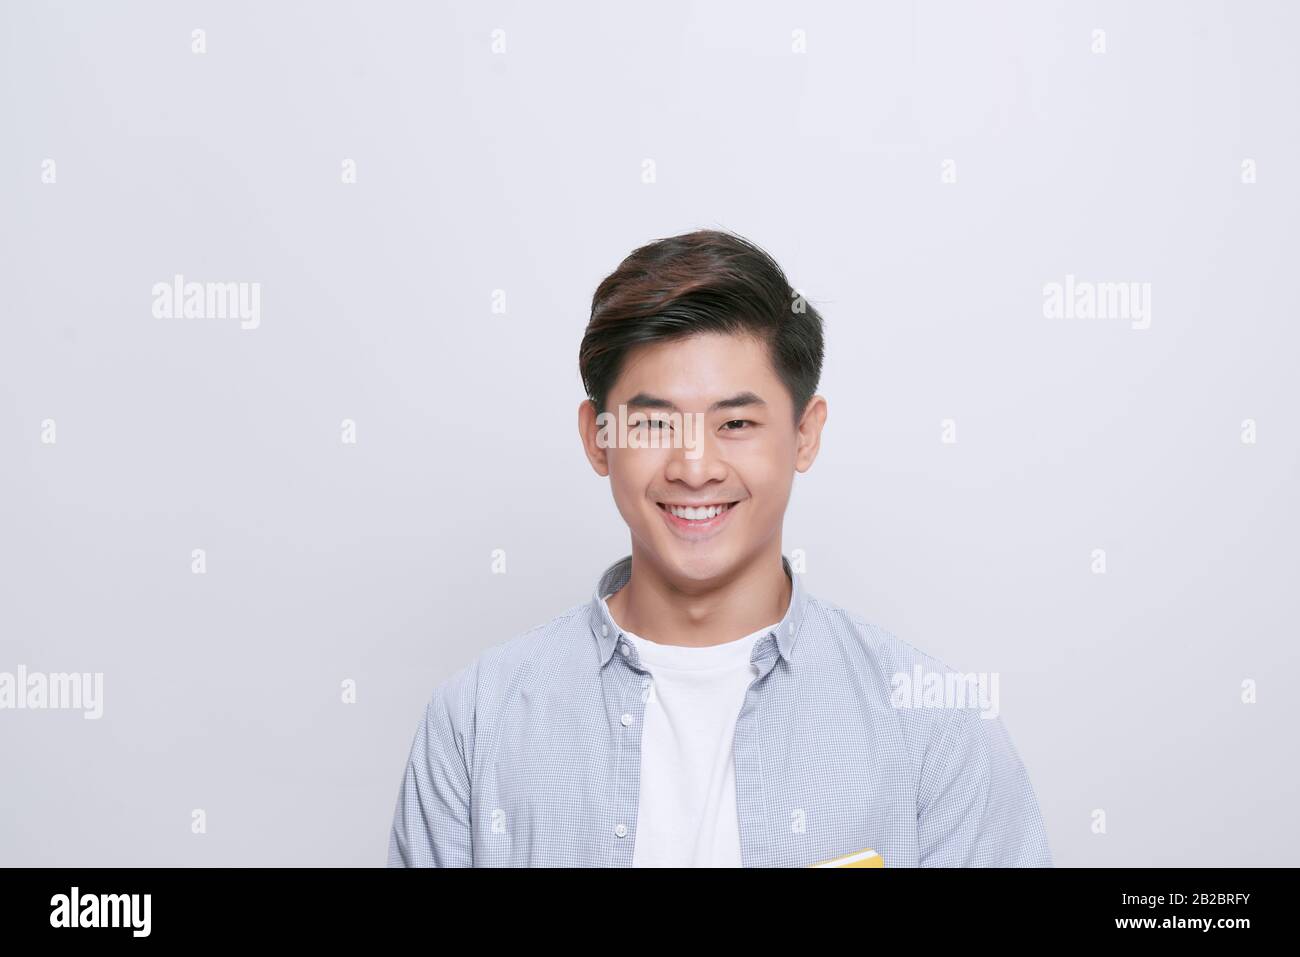 Porträt eines gutaussehenden jungen Mannes mit strahlendem Lächeln auf weißem Hintergrund Stockfoto